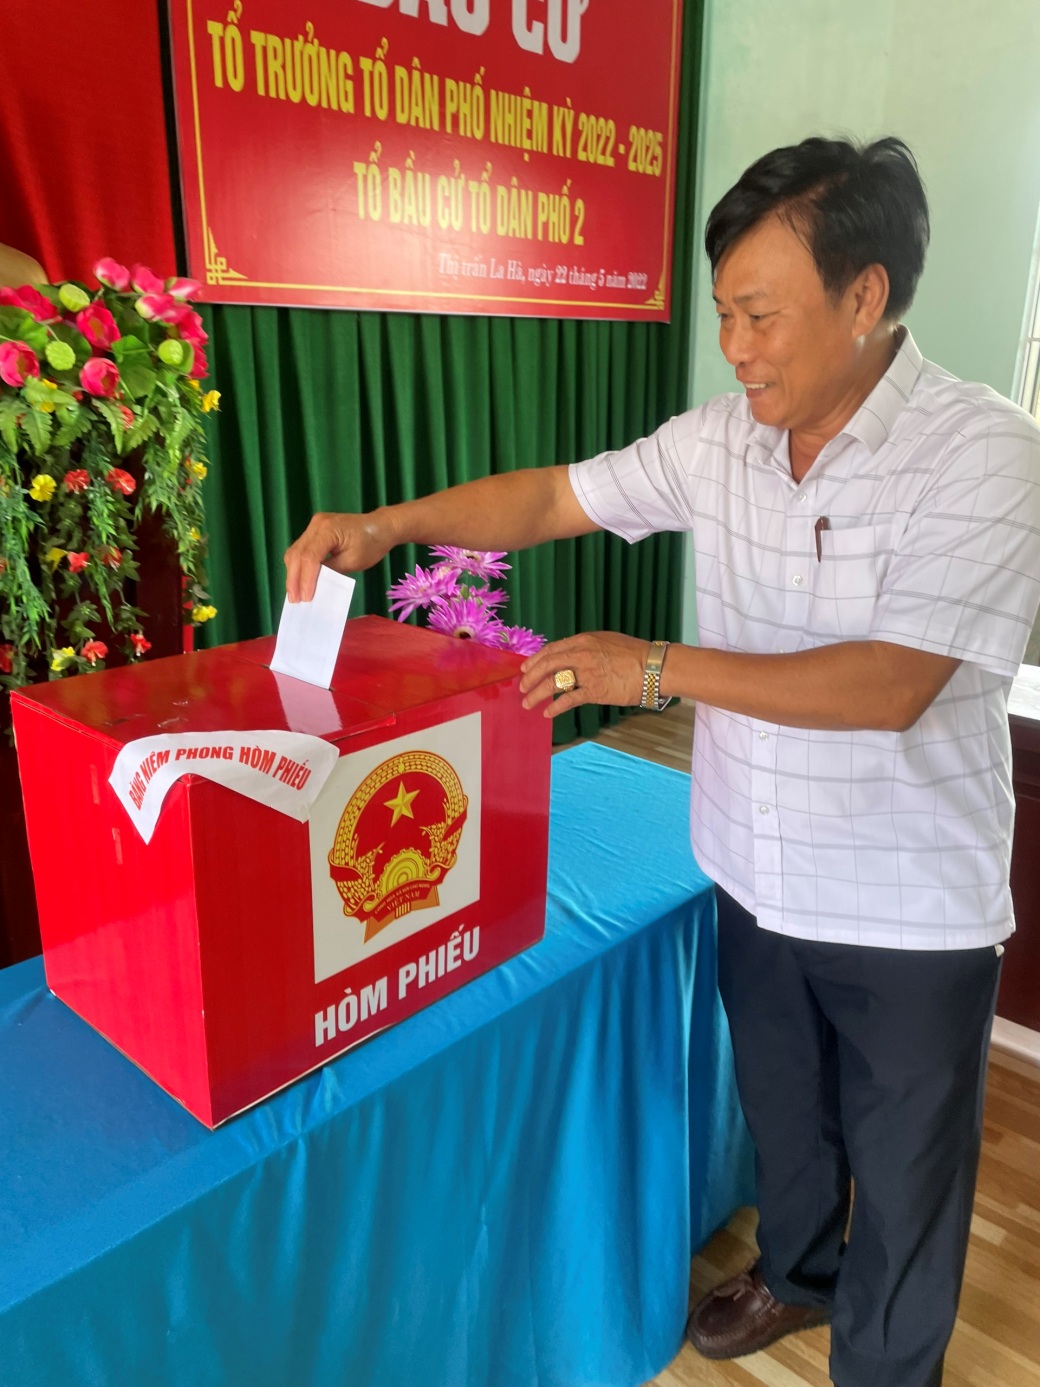 Cử tri huyện Tư Nghĩa hăng hái đi bầu cử trưởng thôn, tổ trưởng tổ dân phố, nhiệm kỳ 2022- 2025